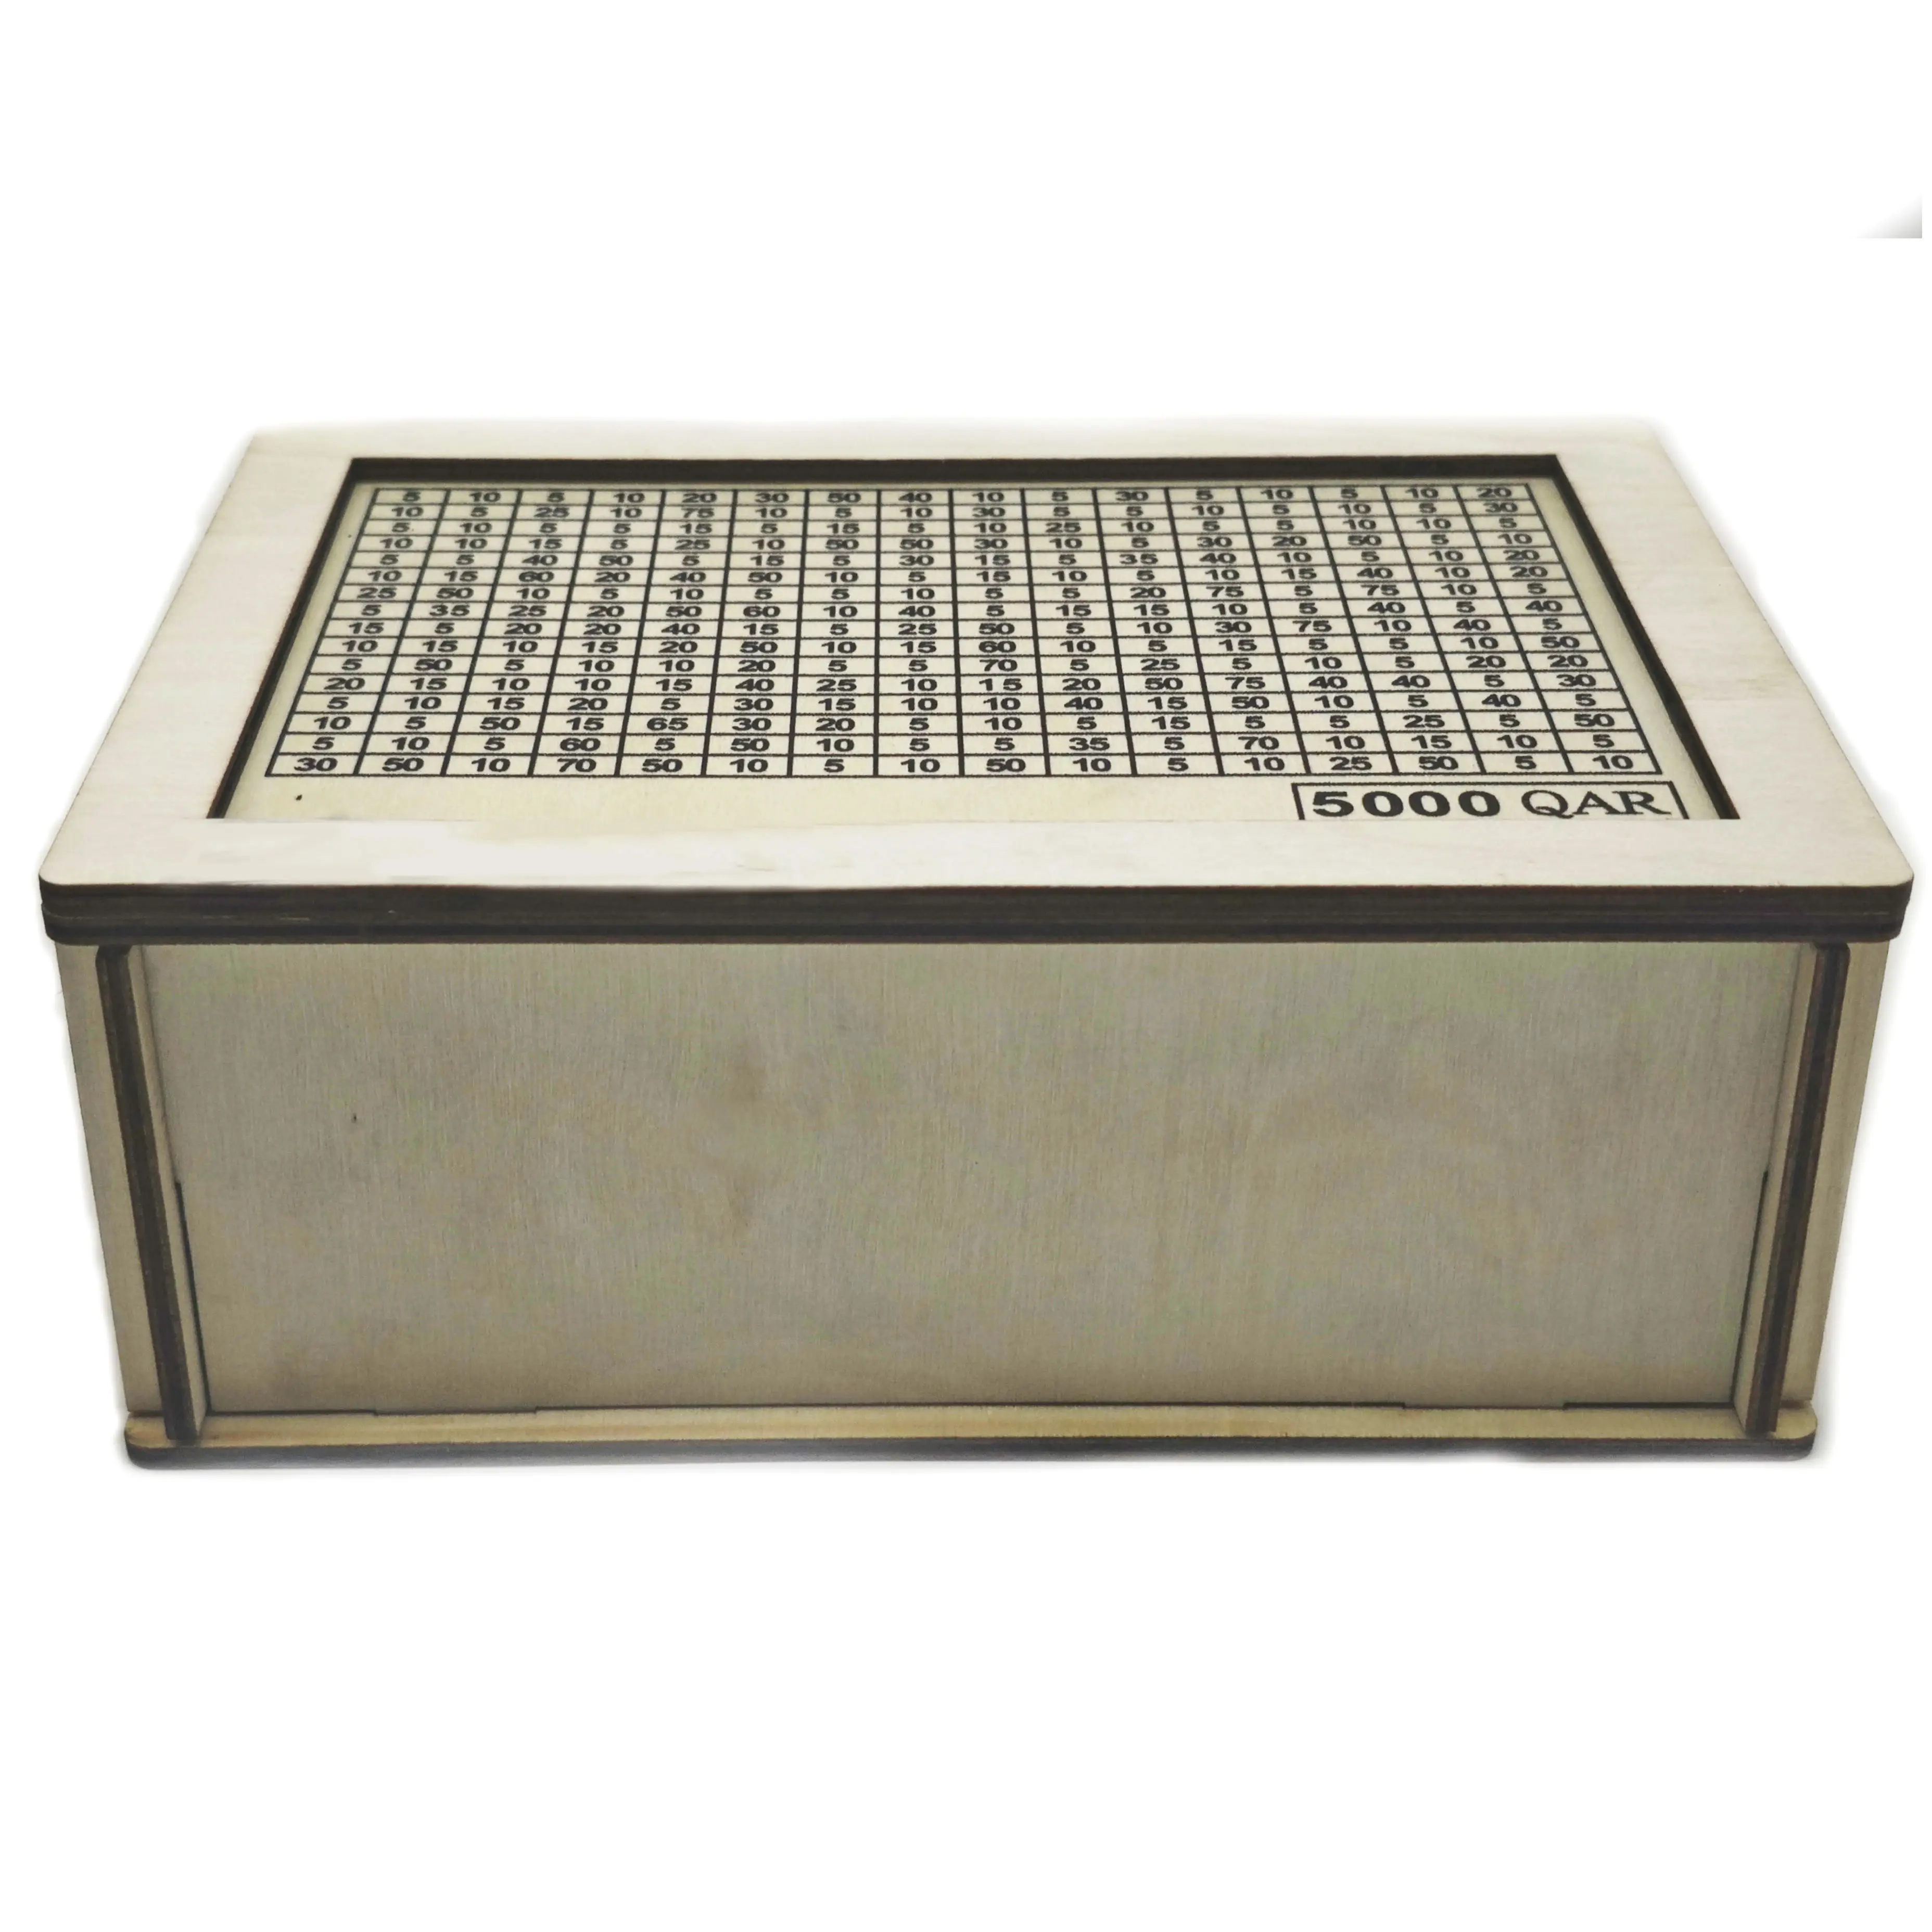 تصميم جديد صندوق توفير الأموال الخشبي صندوق عملات يدوي خشبي بنك عملات الخنزير الخشبي